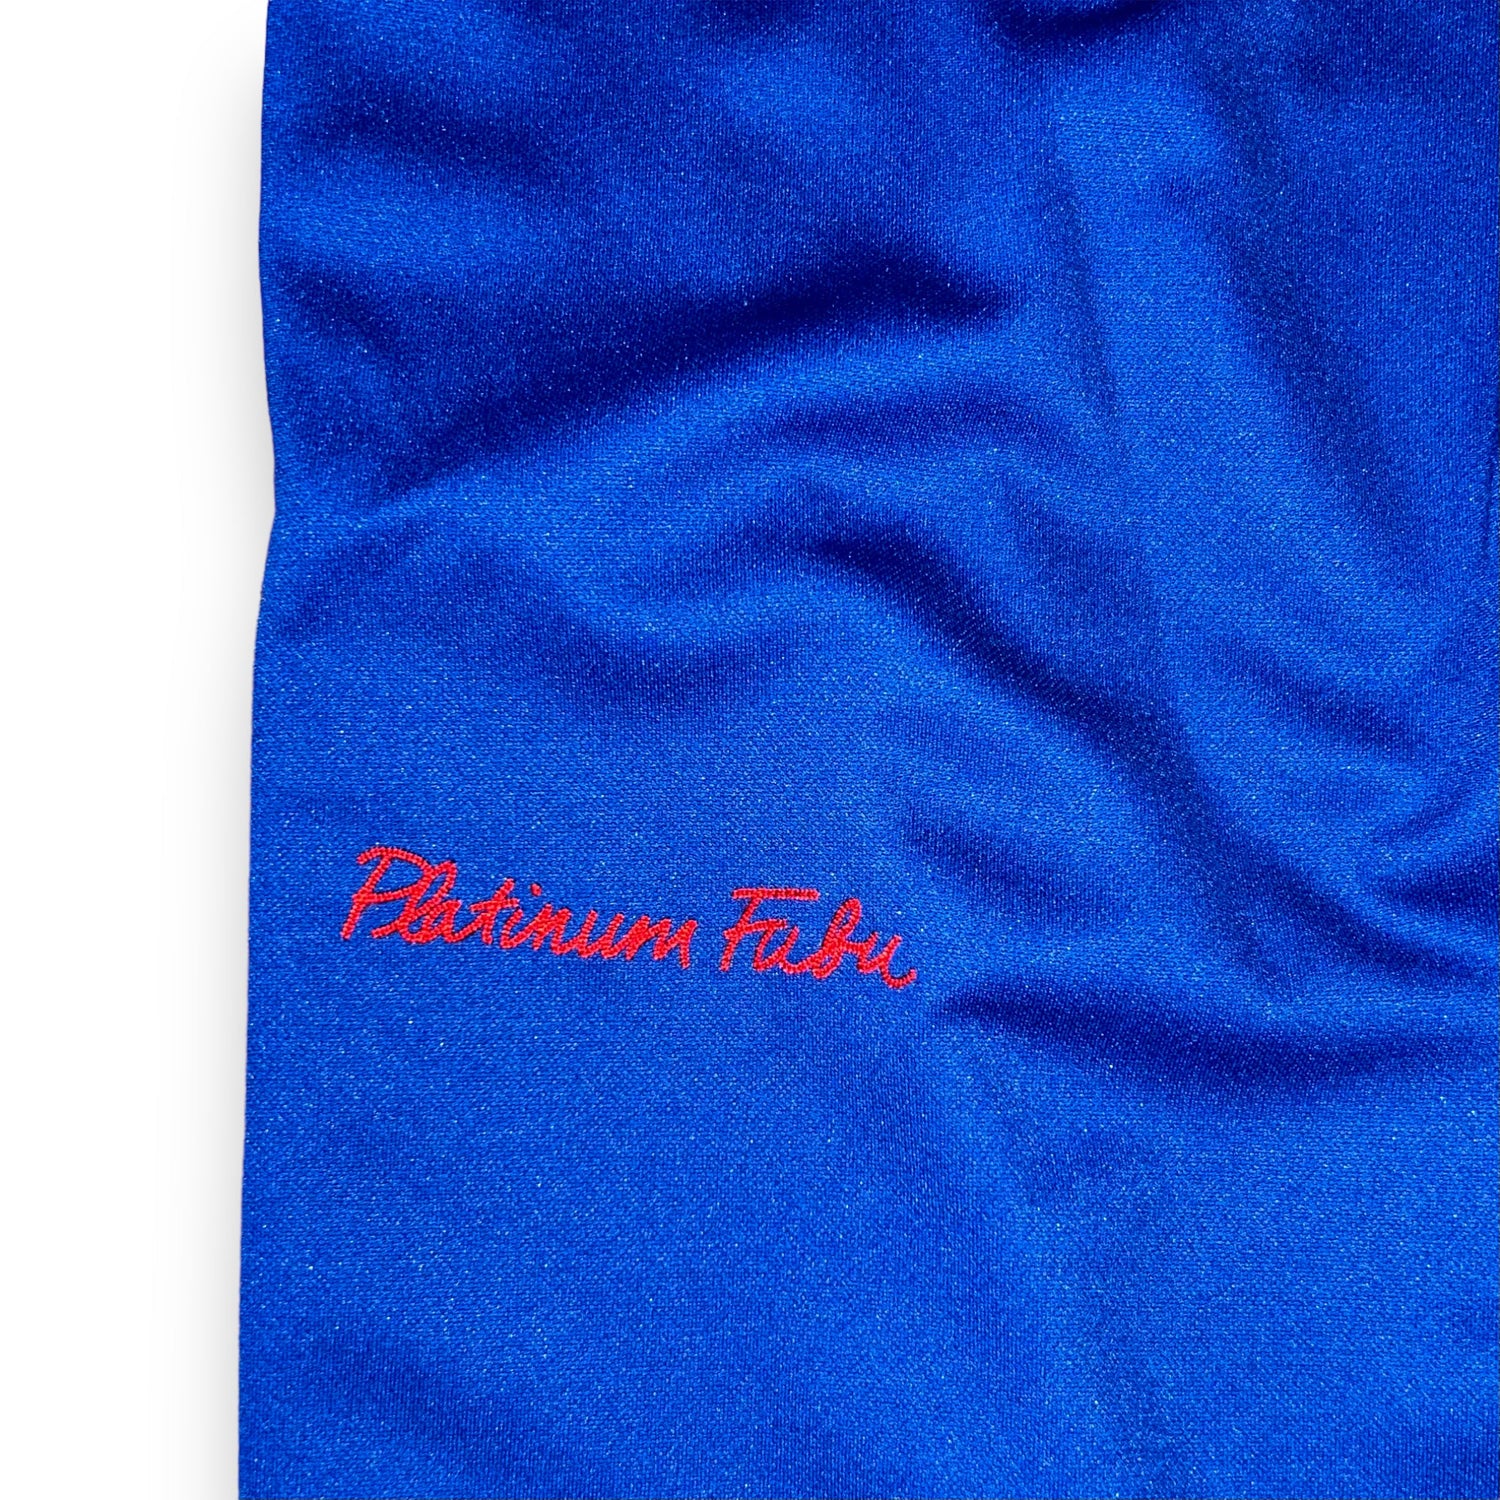 Pantaloni Platinum Fubu Harlem Globetrotters Vintage  (L)